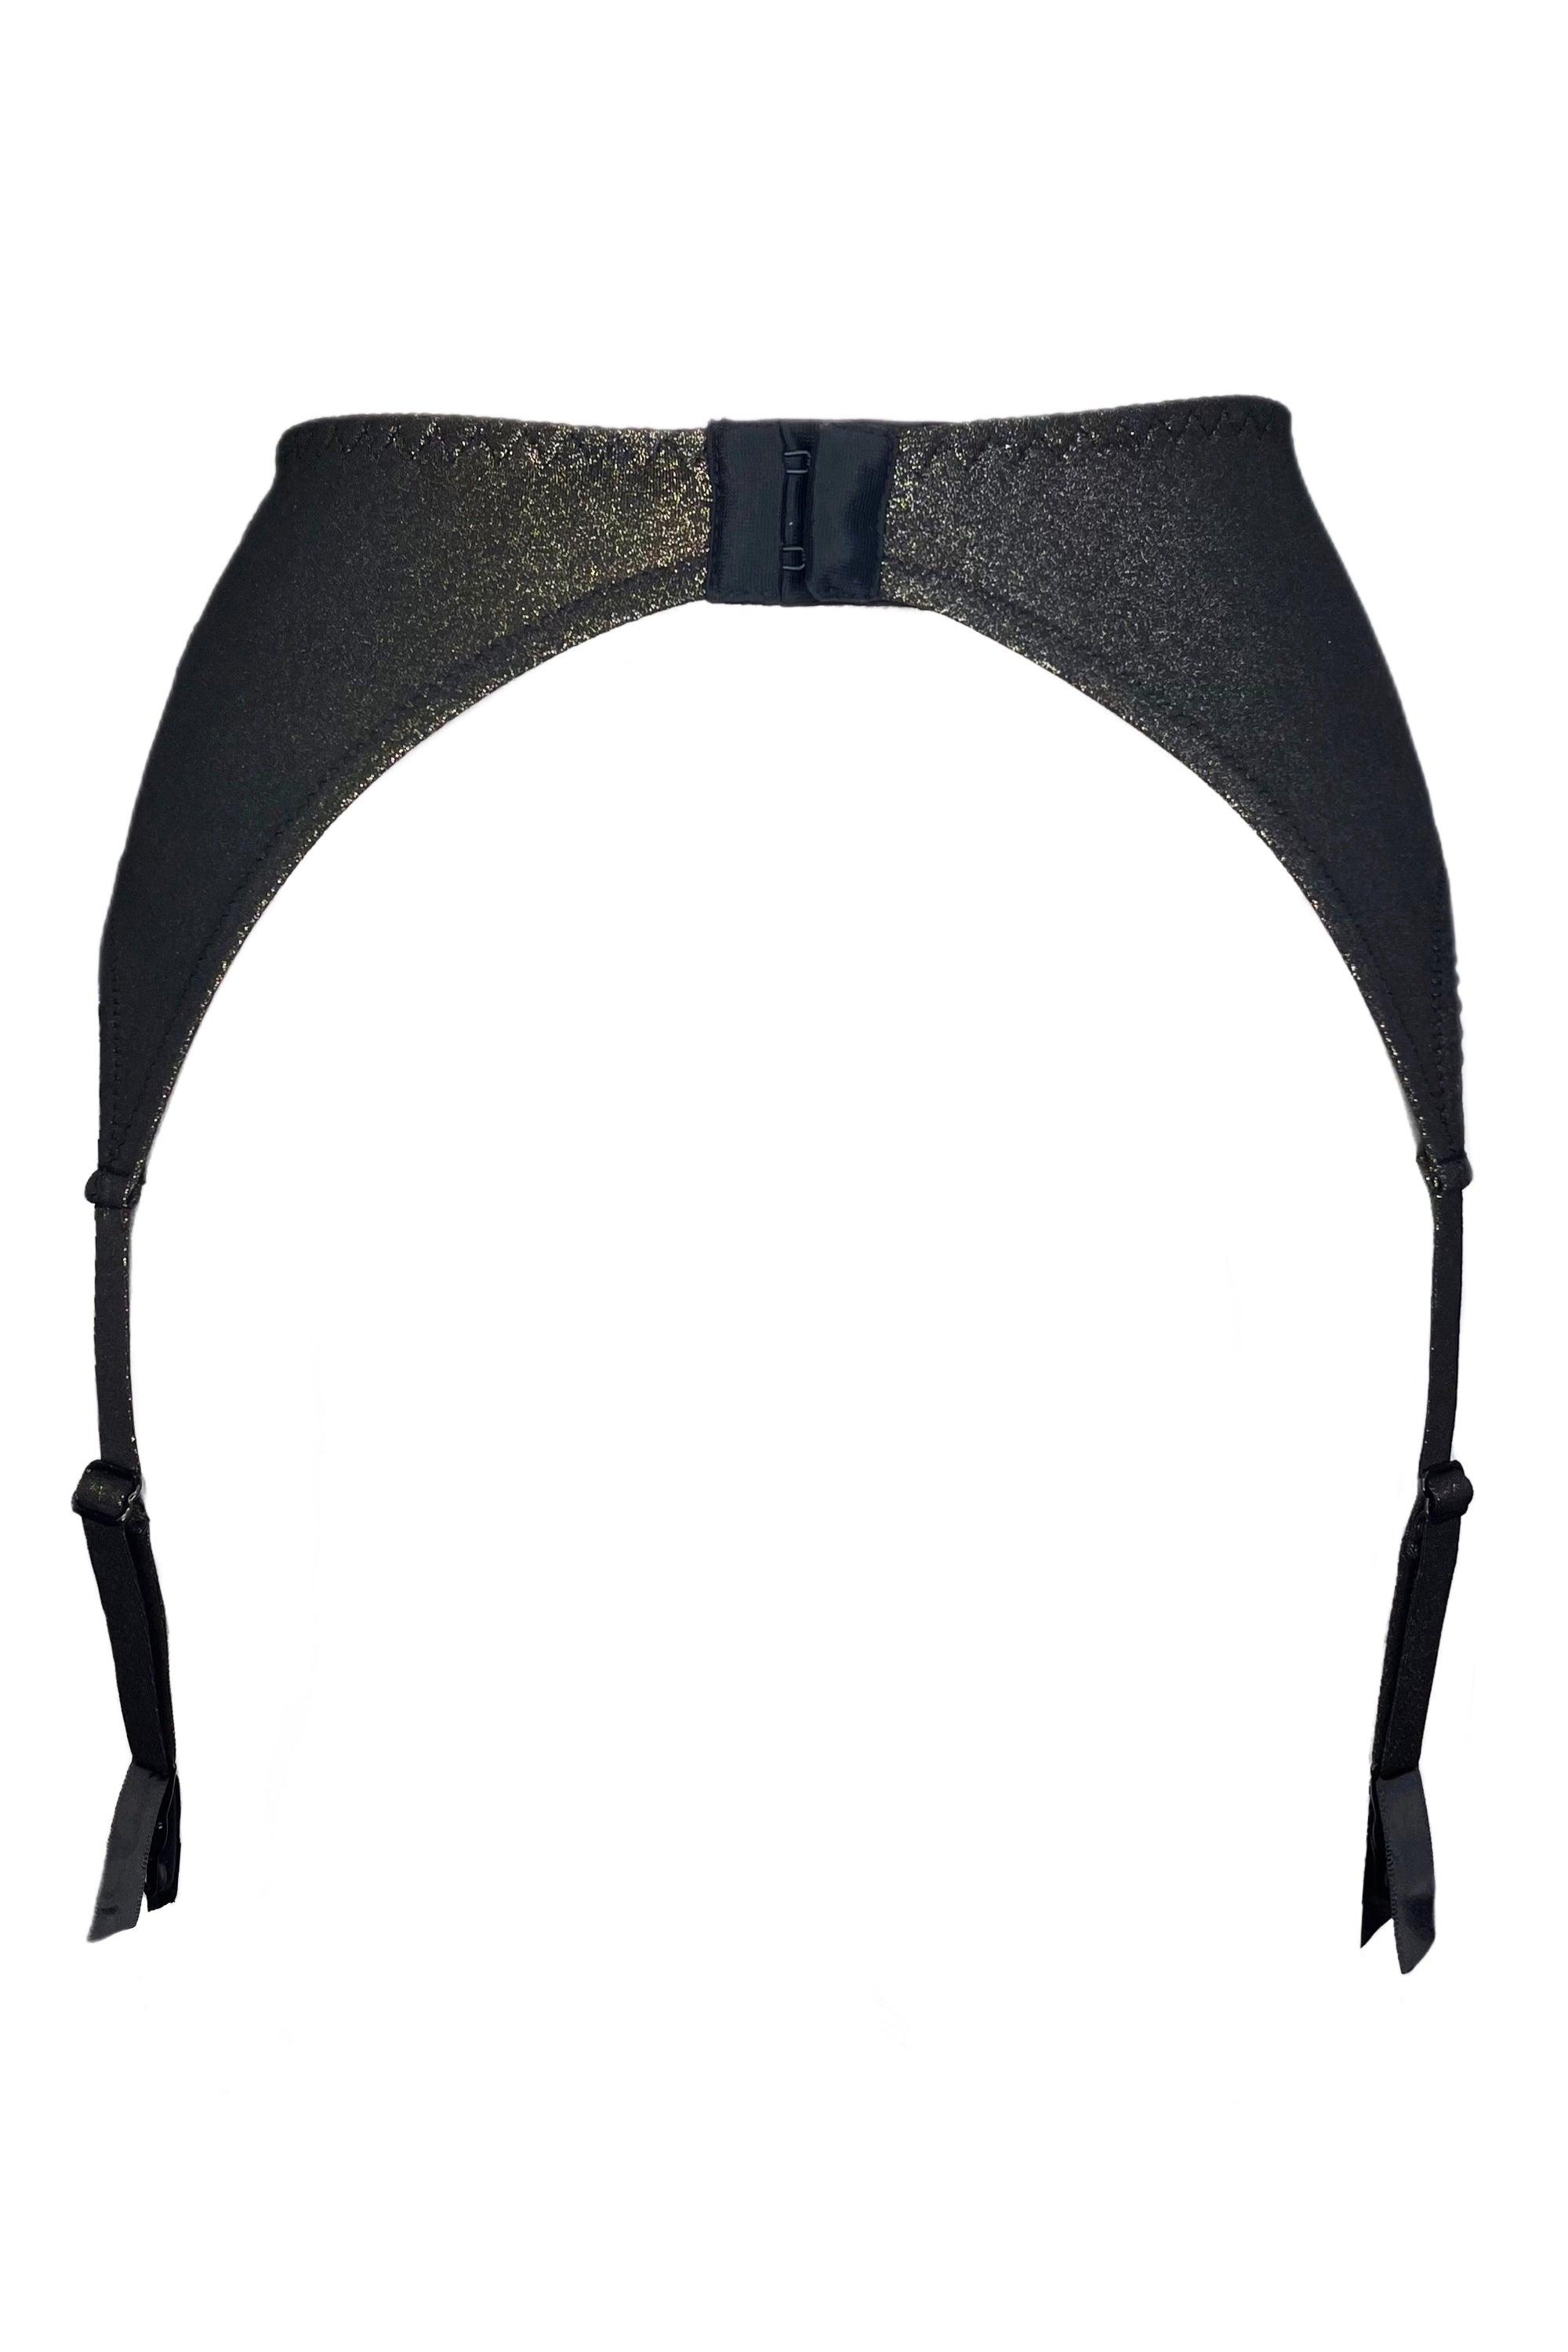 Ramonda black gold garter belt - yesUndress